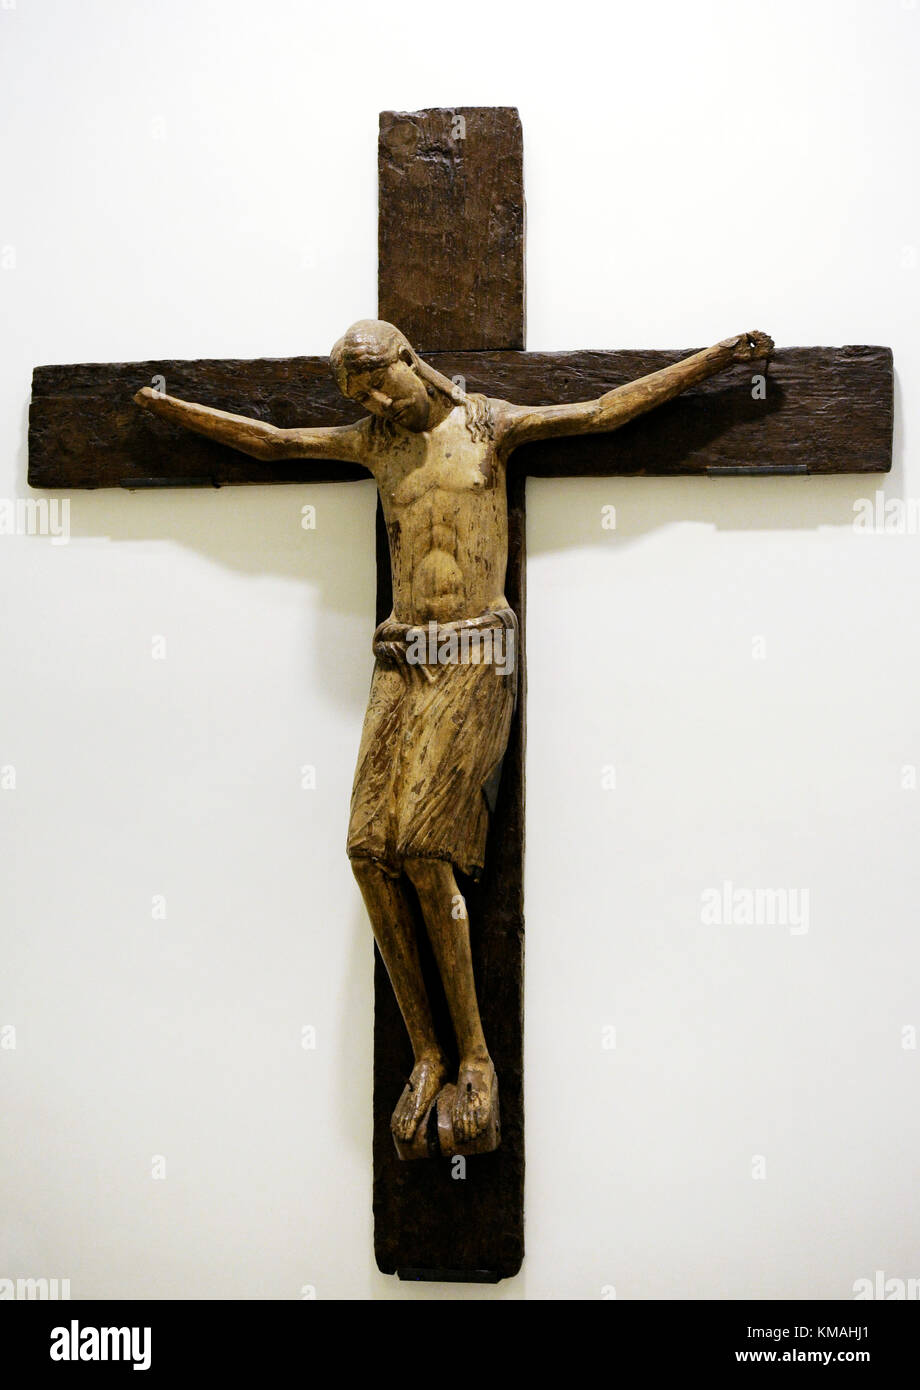 Artiste inconnu. première moitié du 13ème siècle. crucifix. bois de noyer sculpté et peint. Musée national de Capodimonte. naples. L'Italie. Banque D'Images